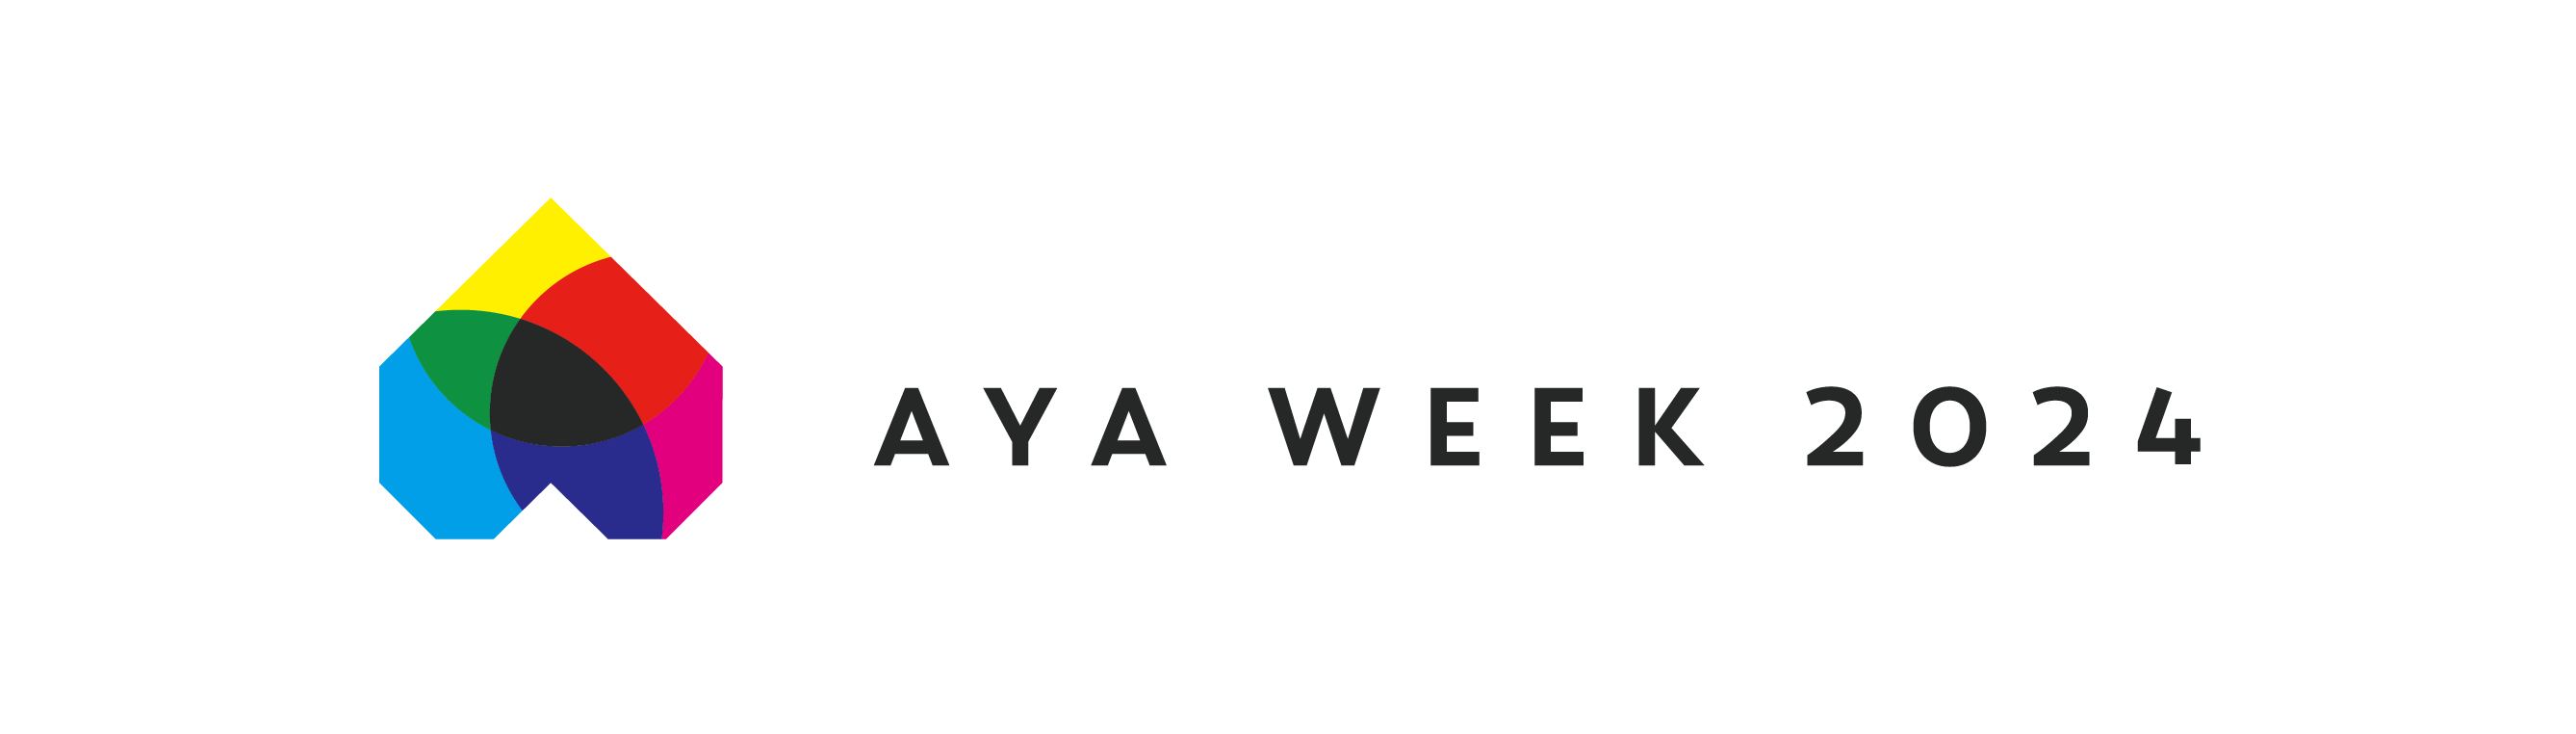 AYAweek2024 logo_horizontal.png